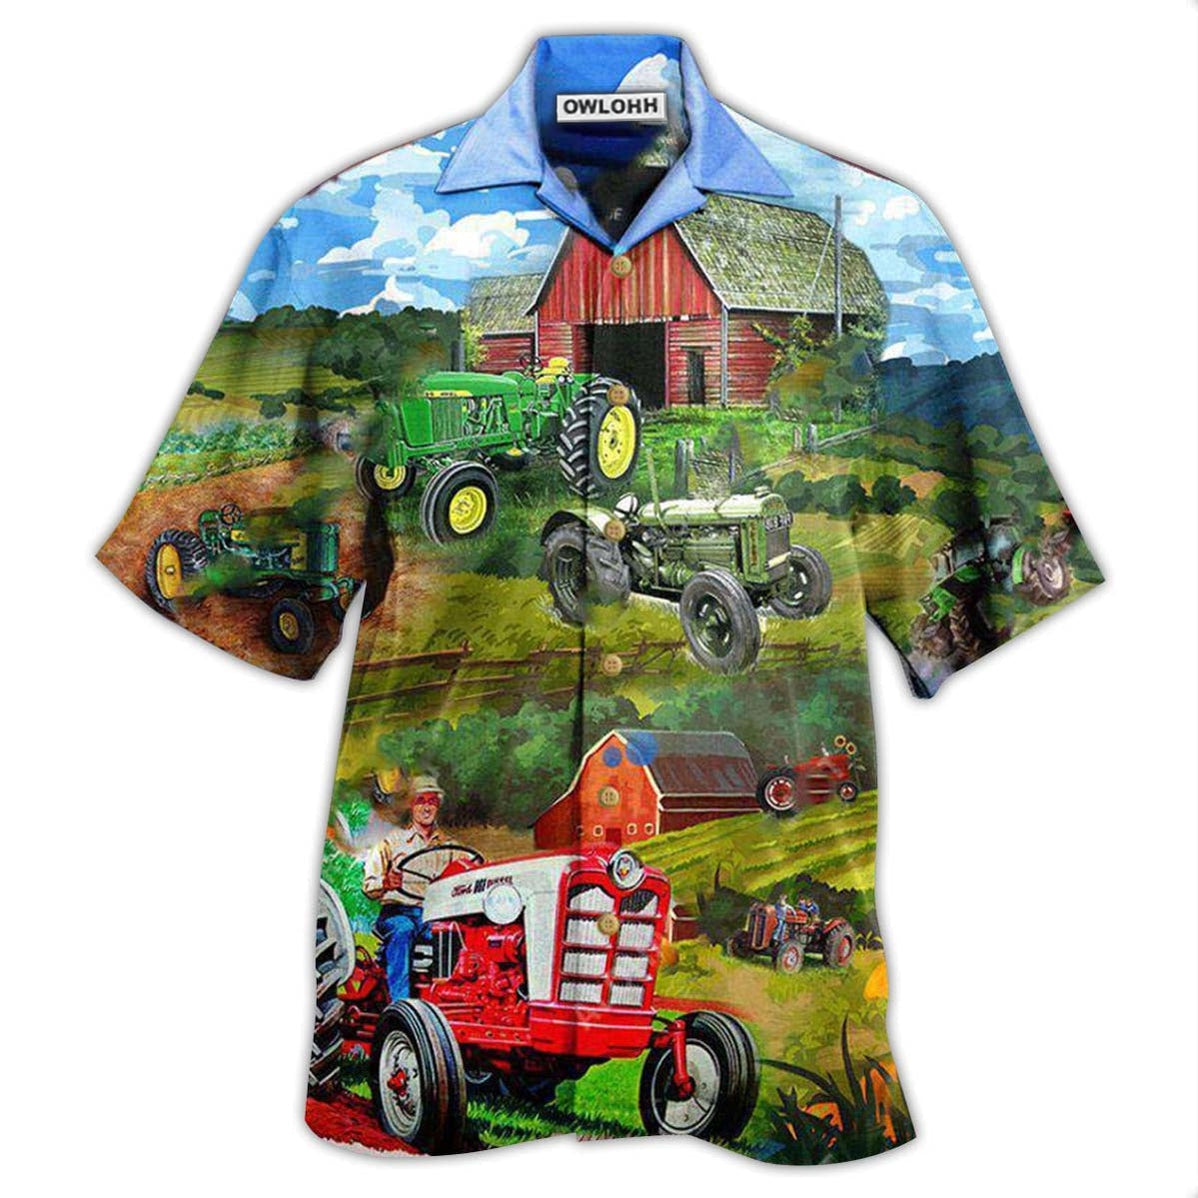 Hawaiian Shirt / Adults / S Tractor Keep Calm And Drive A Tractor - Hawaiian Shirt - Owls Matrix LTD